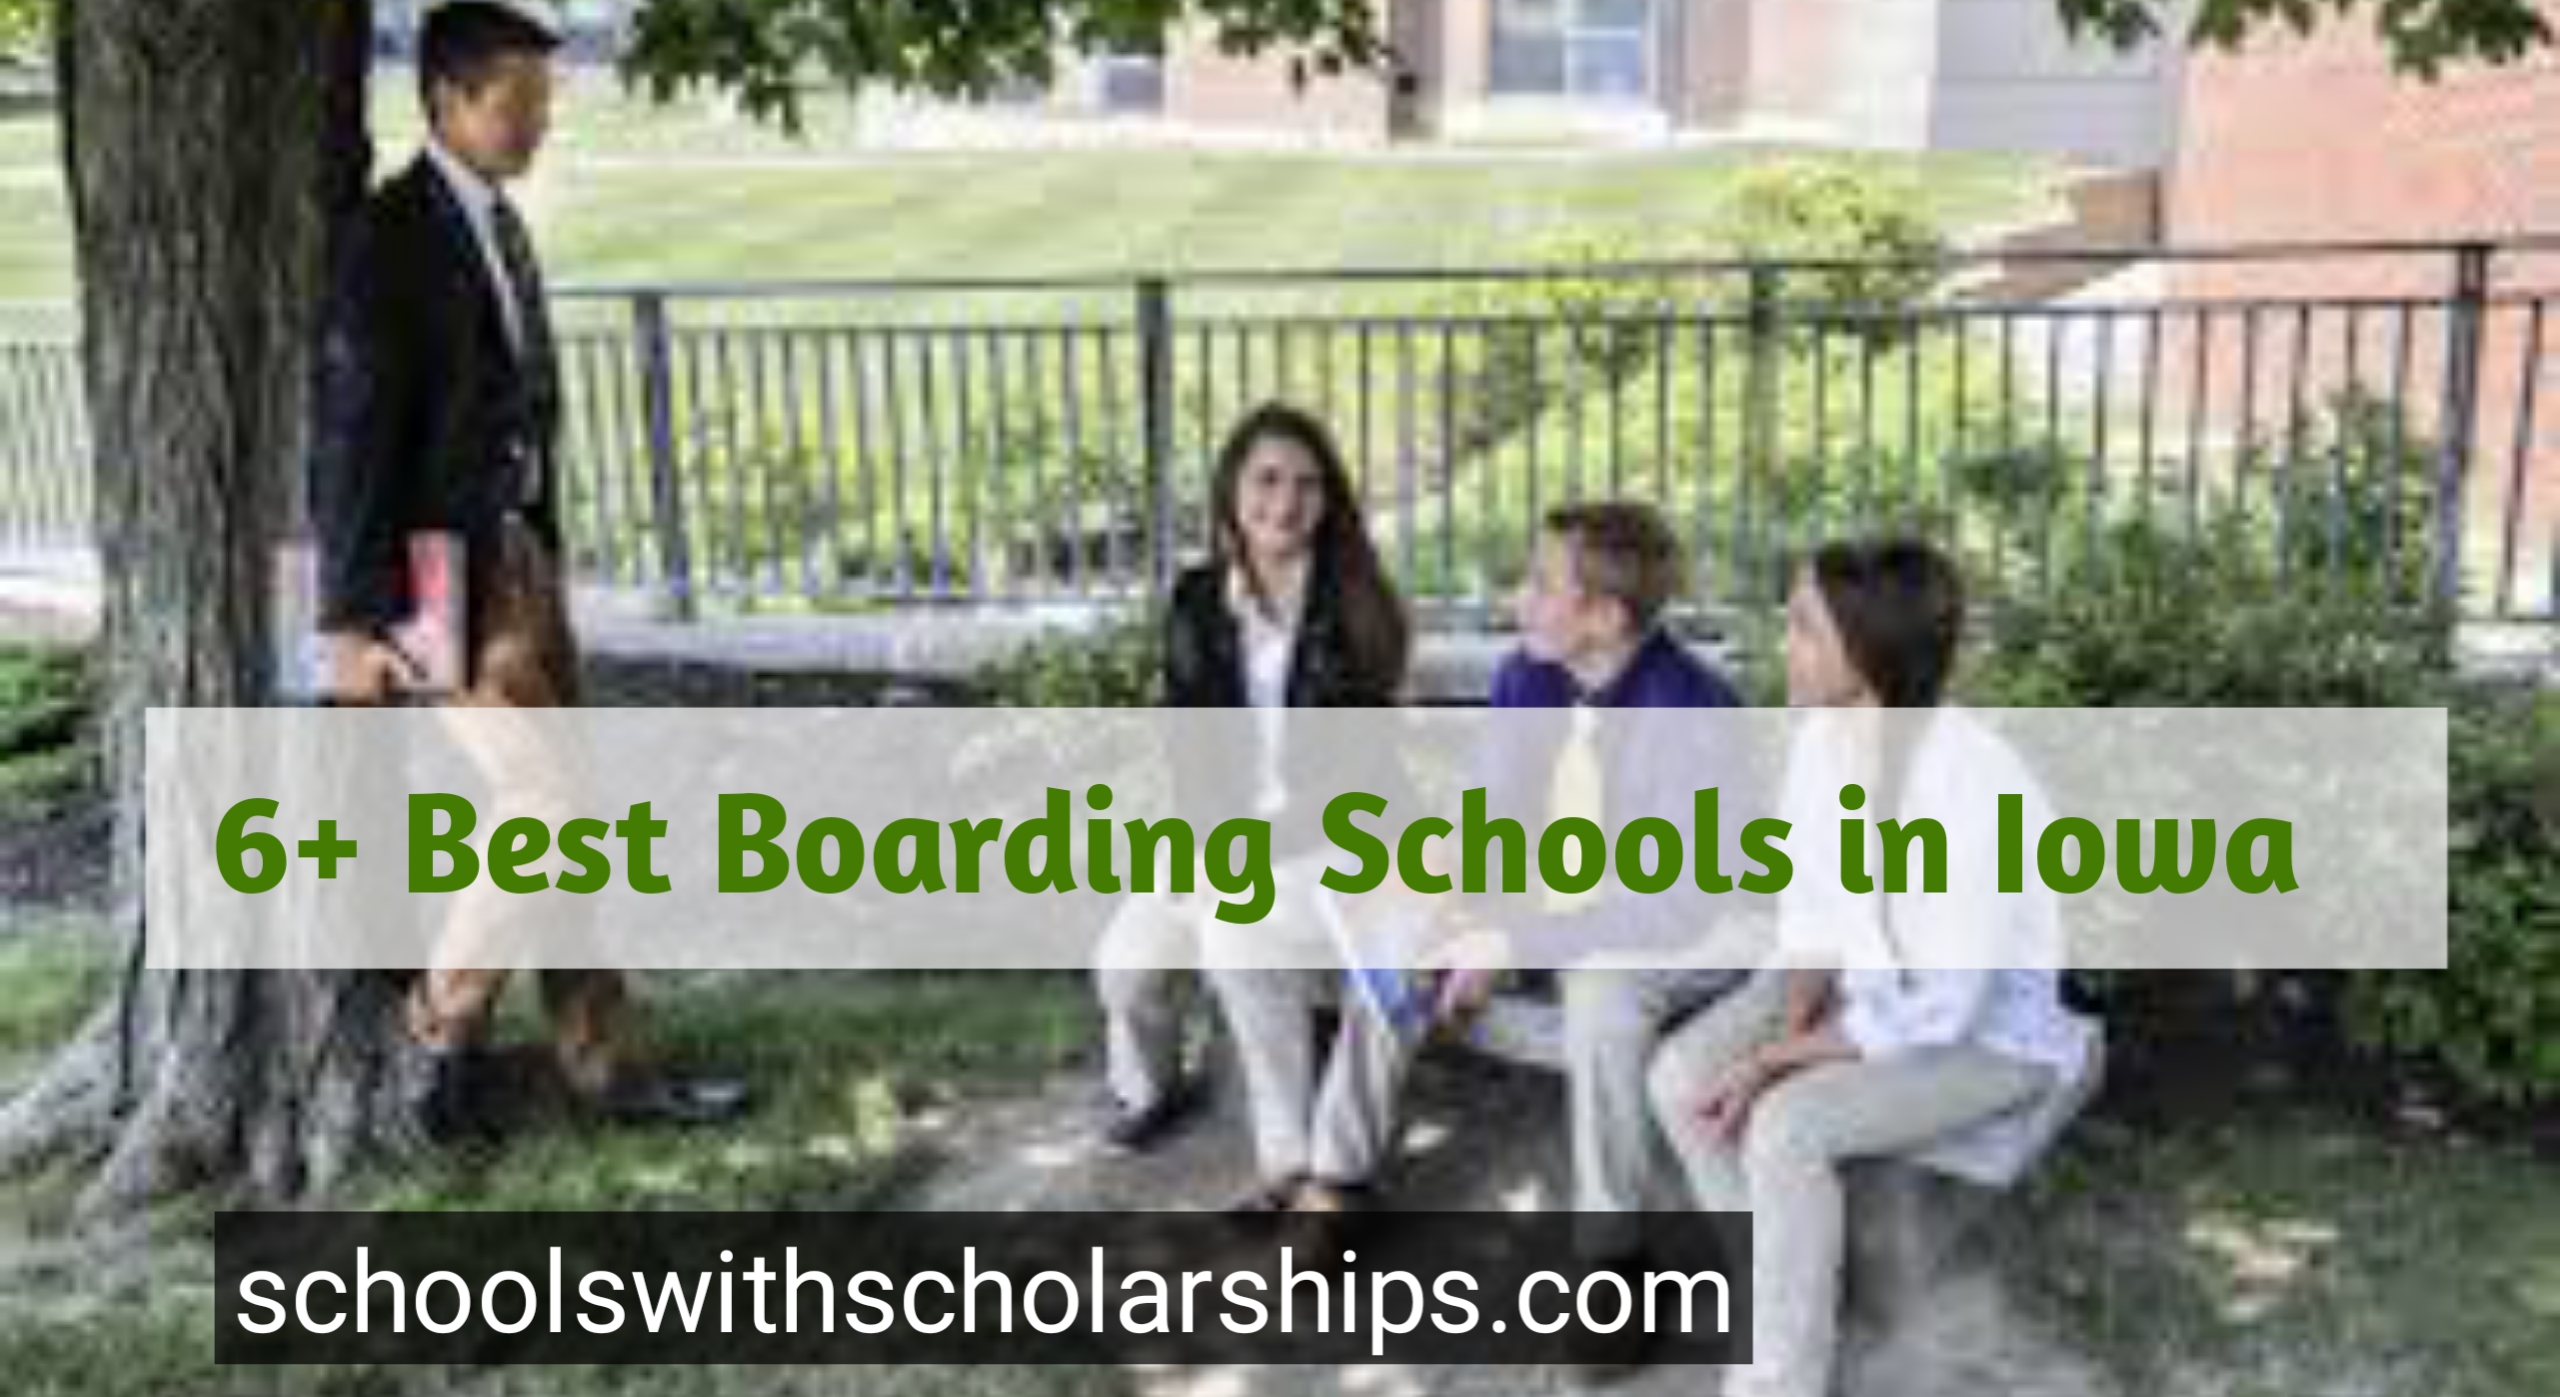 Best boarding Schools in Iowa